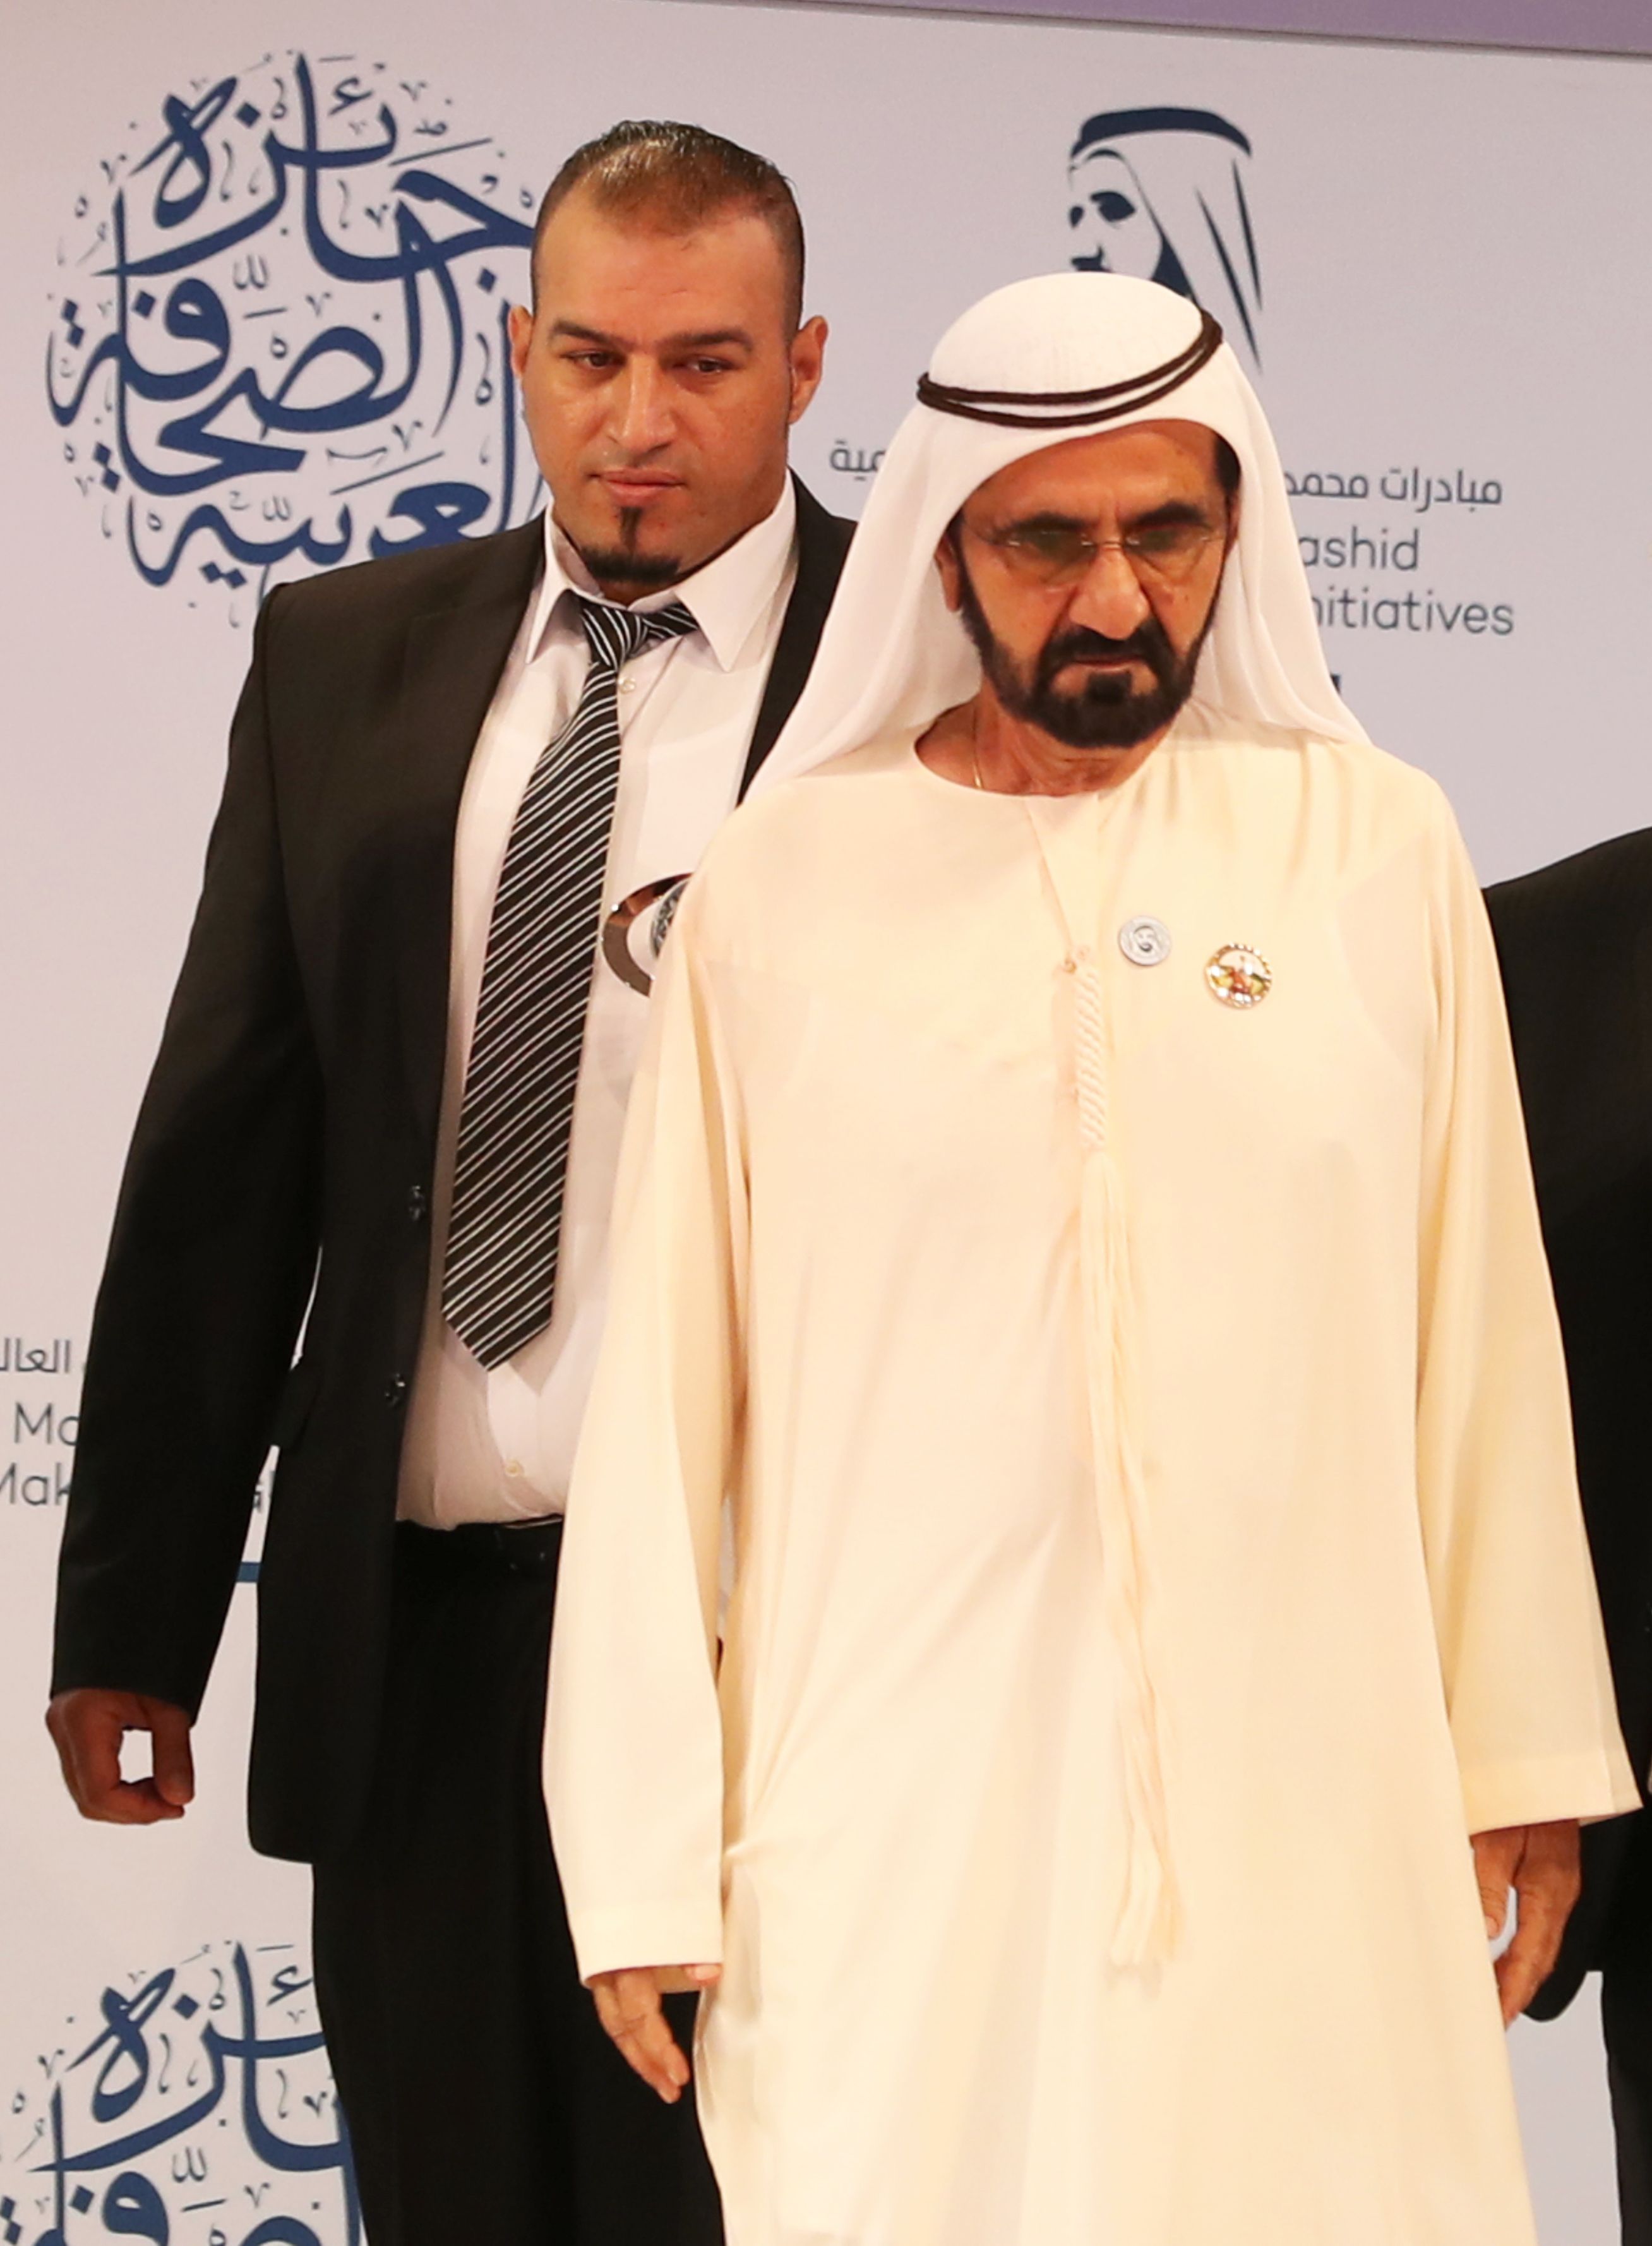 صاحب السمو الشيخ محمد بن راشد آل مكتوم نائب رئيس الدولة رئيس مجلس الوزراء حاكم دبى